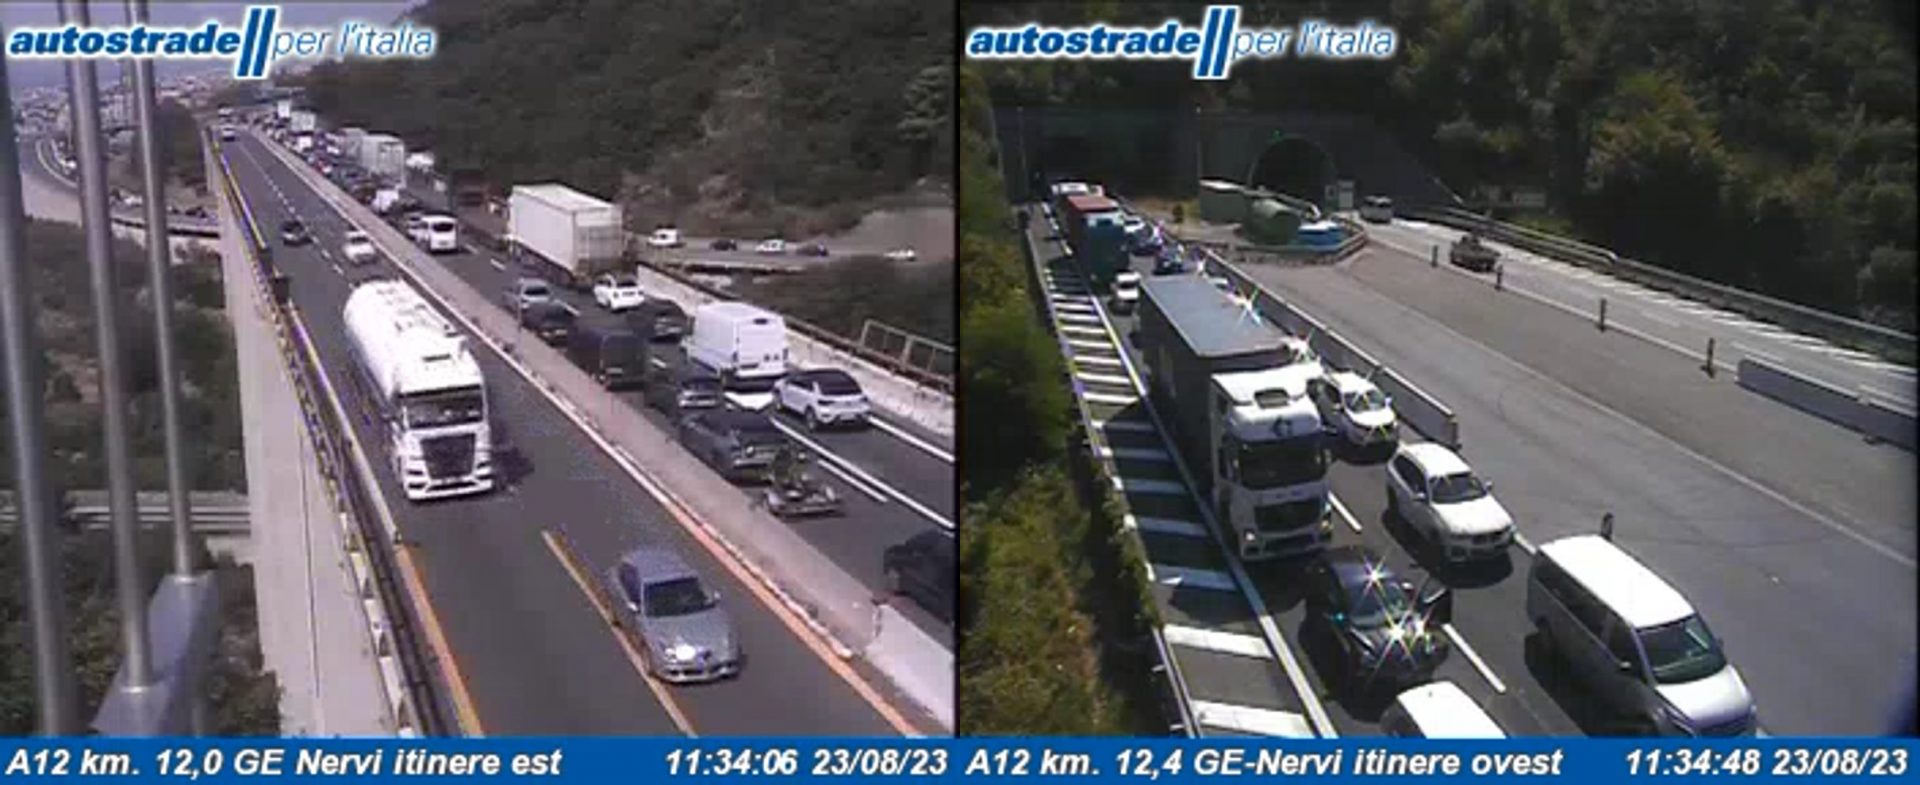 Sulla A12  nel tratto compreso tra Genova Nervi e Genova Est, un incidente sta provocando 6 km di coda in direzione Genova